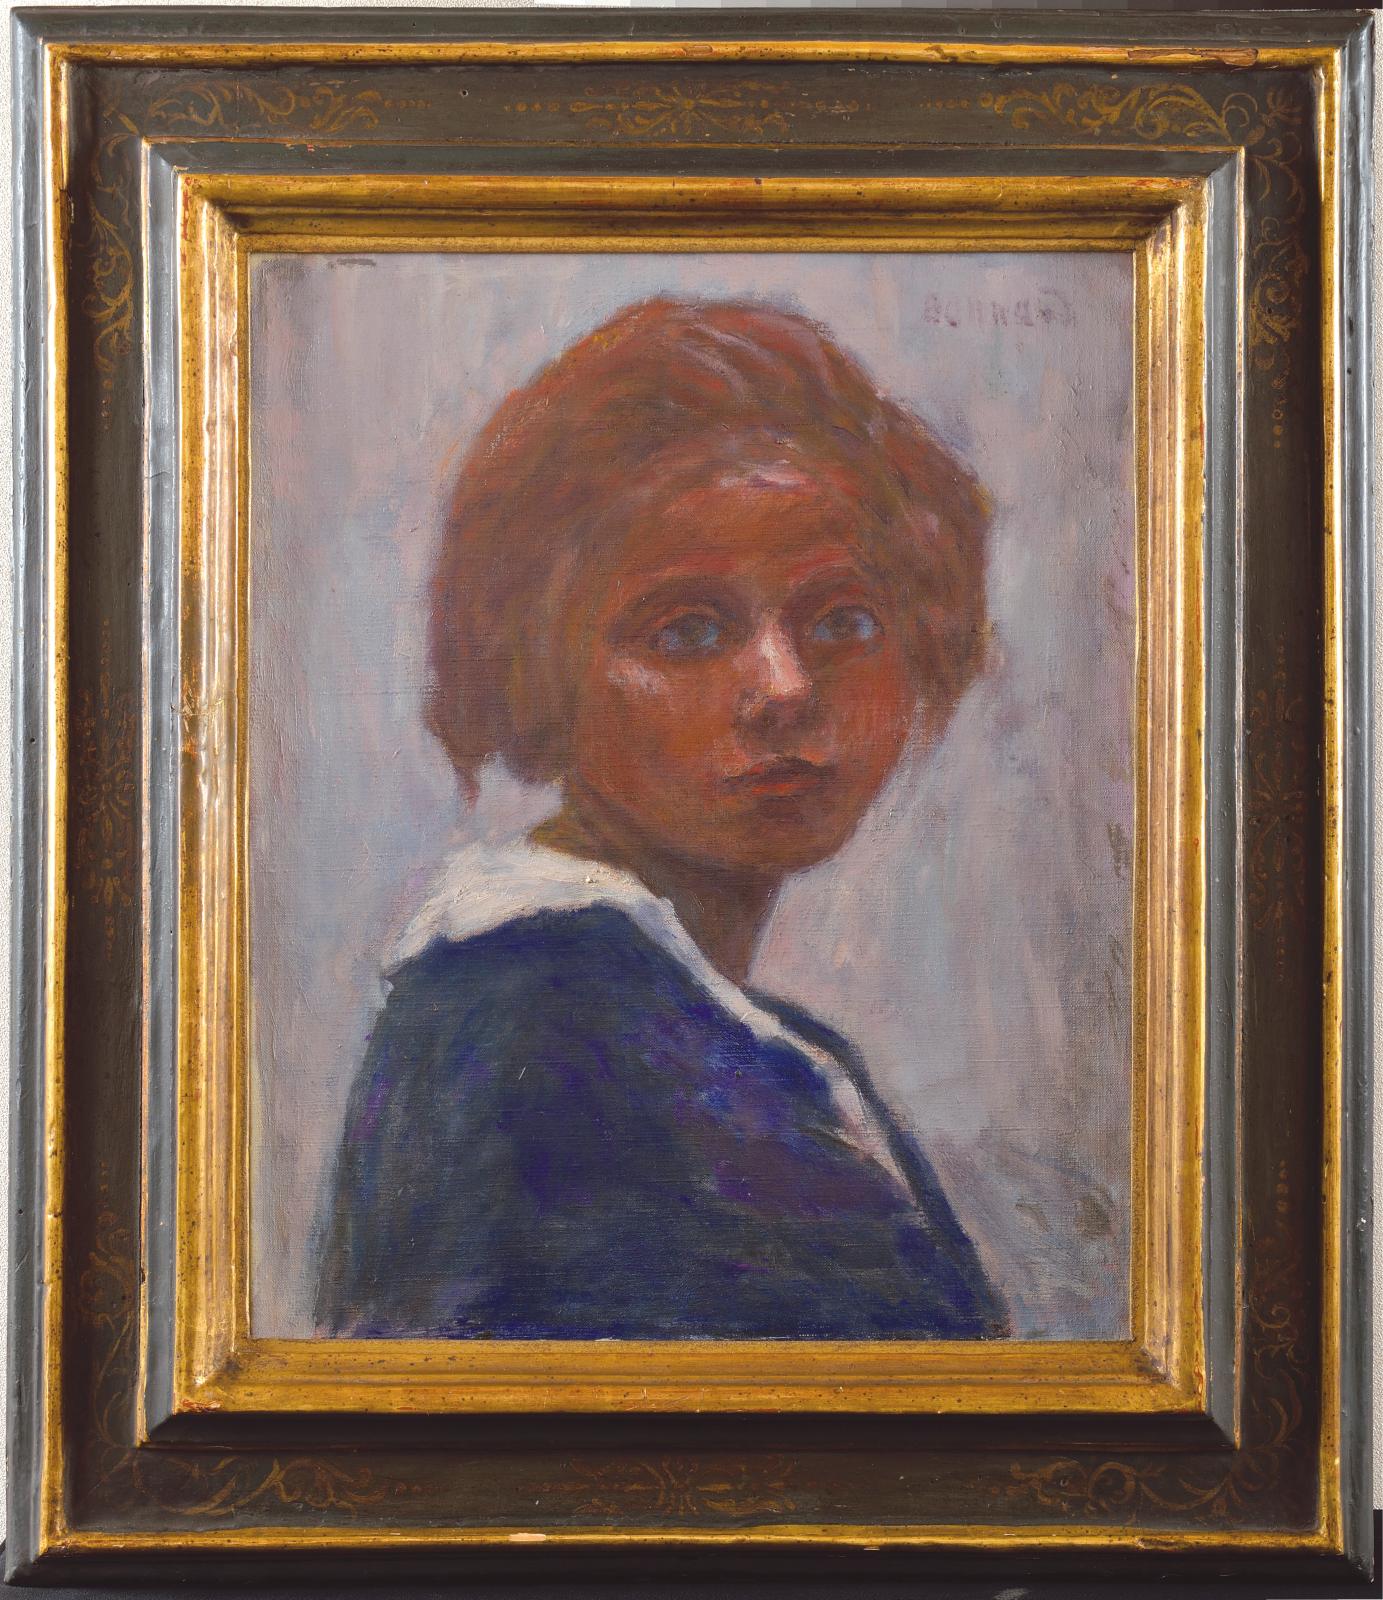 Pierre Bonnard (1867-1947), Portrait de femme (Renée Monchaty), vers 1920, huile sur toile, 43 x 34 cm. Estimation : 150 000/180 000 €